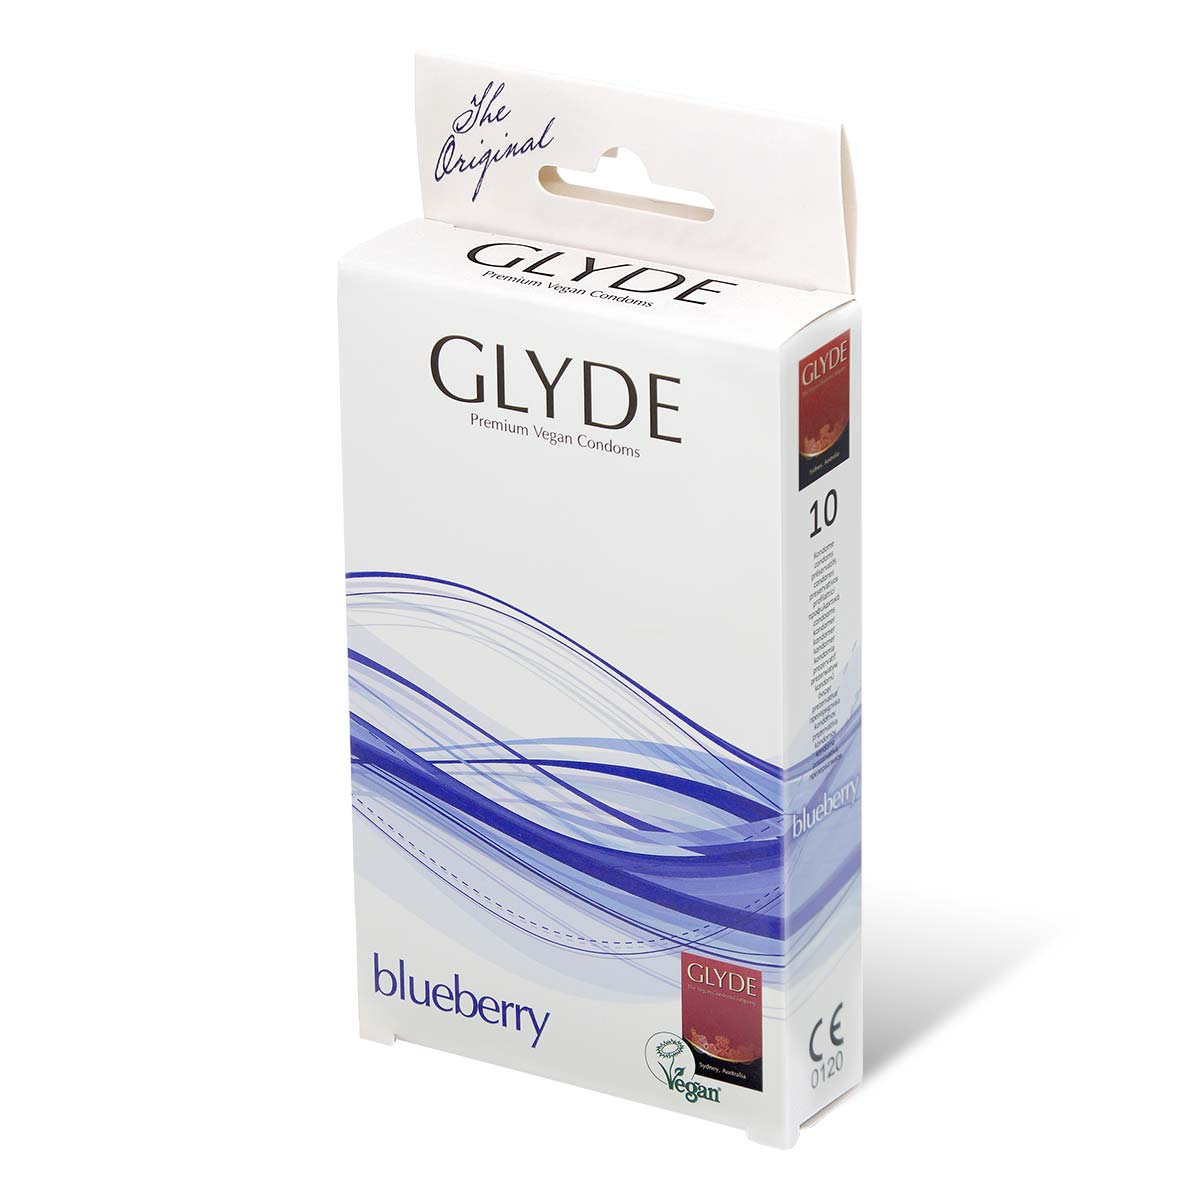 Glyde 格蕾迪 素食主义安全套 蓝莓香 10 片装 乳胶安全套-p_1